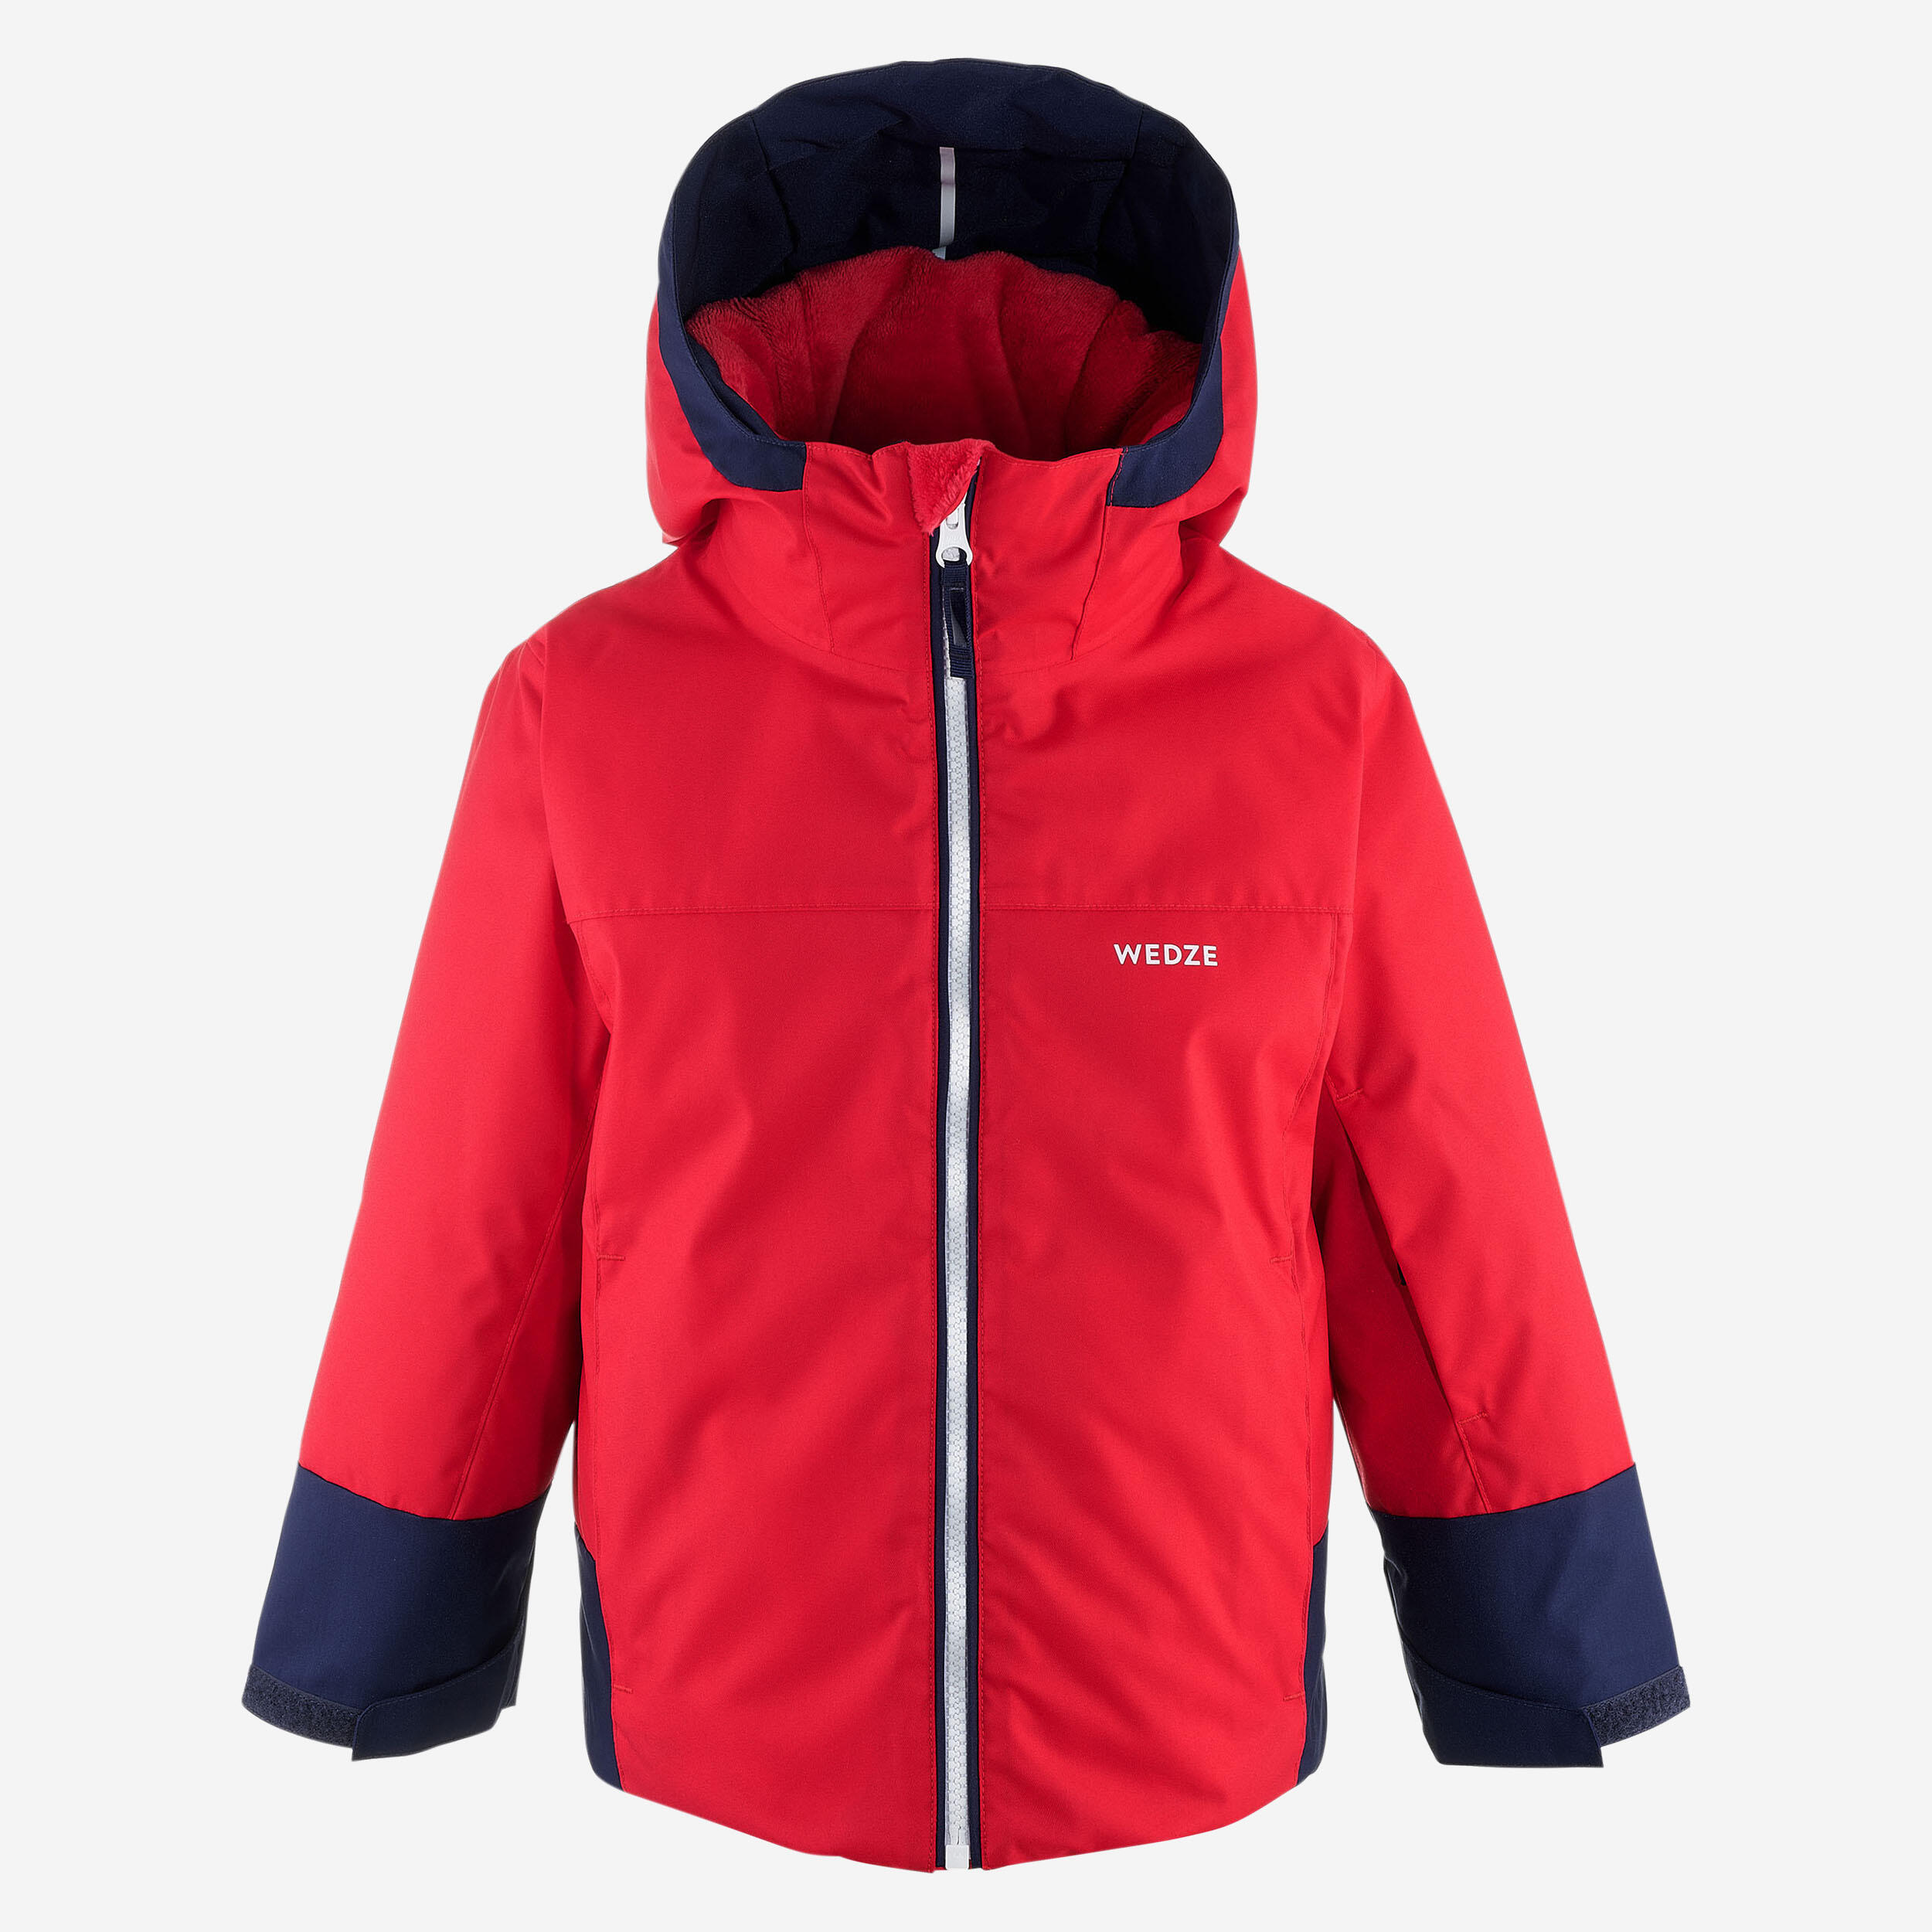 veste de ski enfant chaude et impermeable 500 pull'n fit rouge / marine - wedze